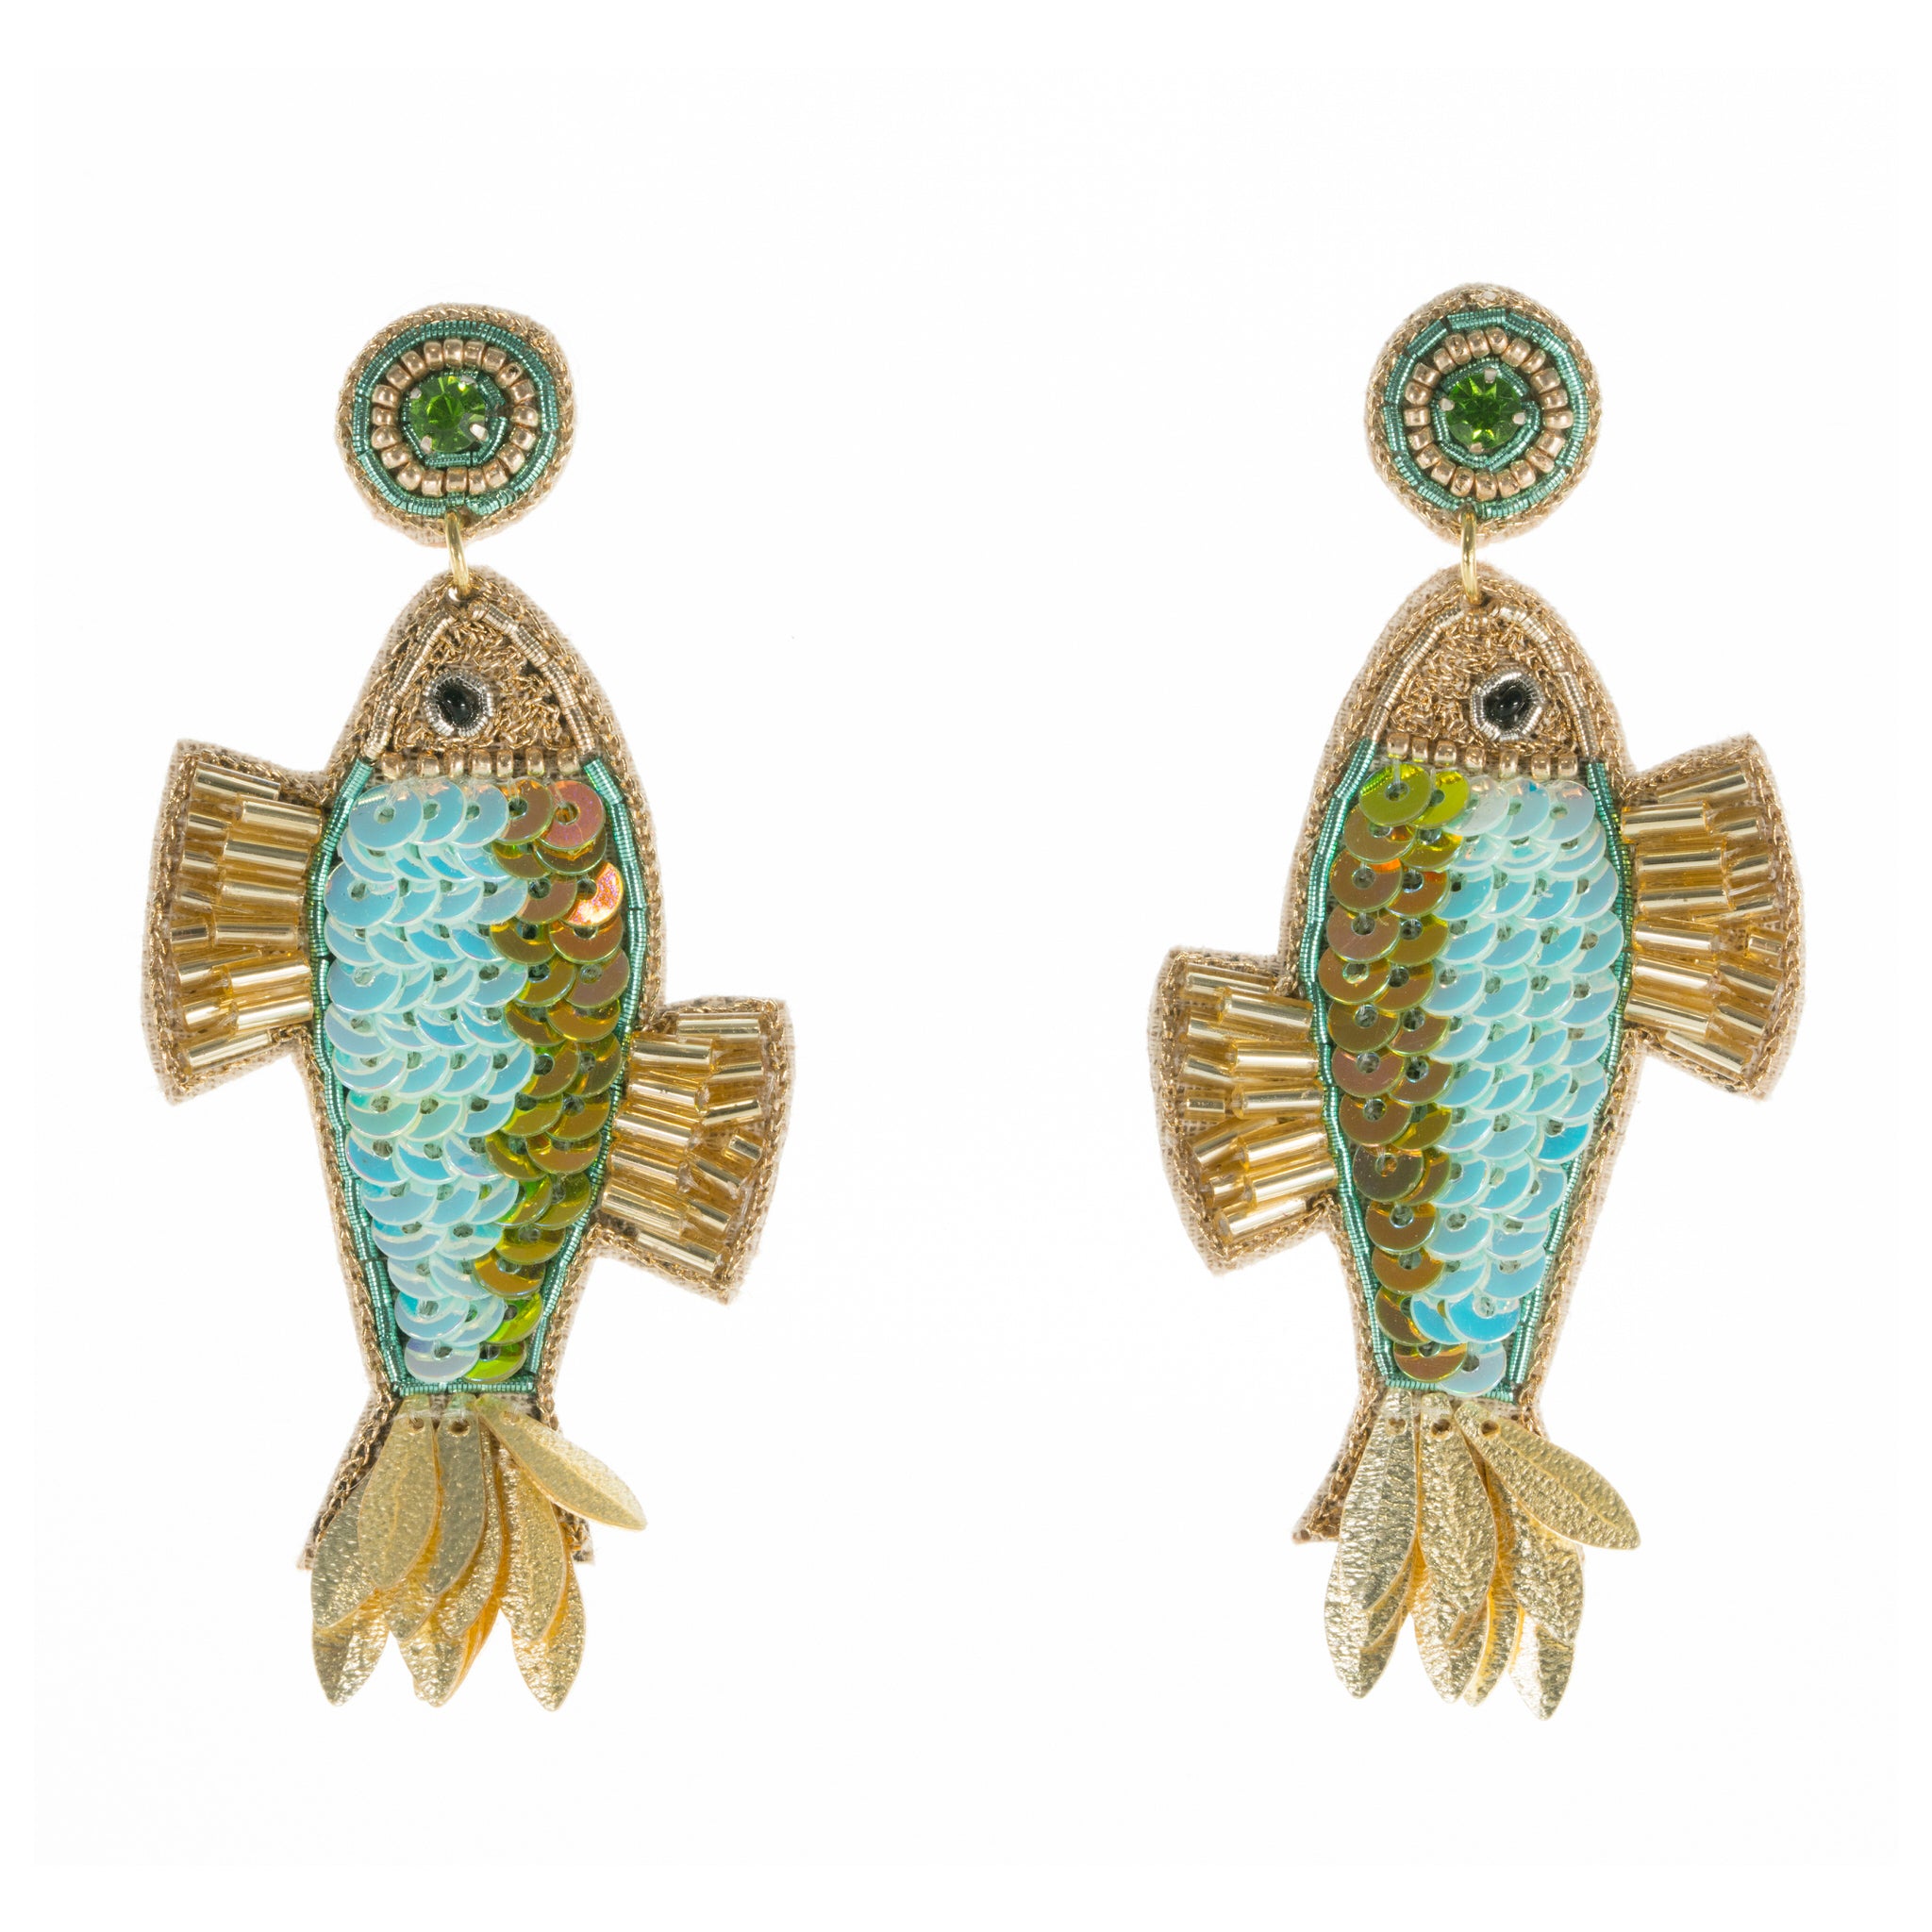 Fancy Fish Earrings in Blue